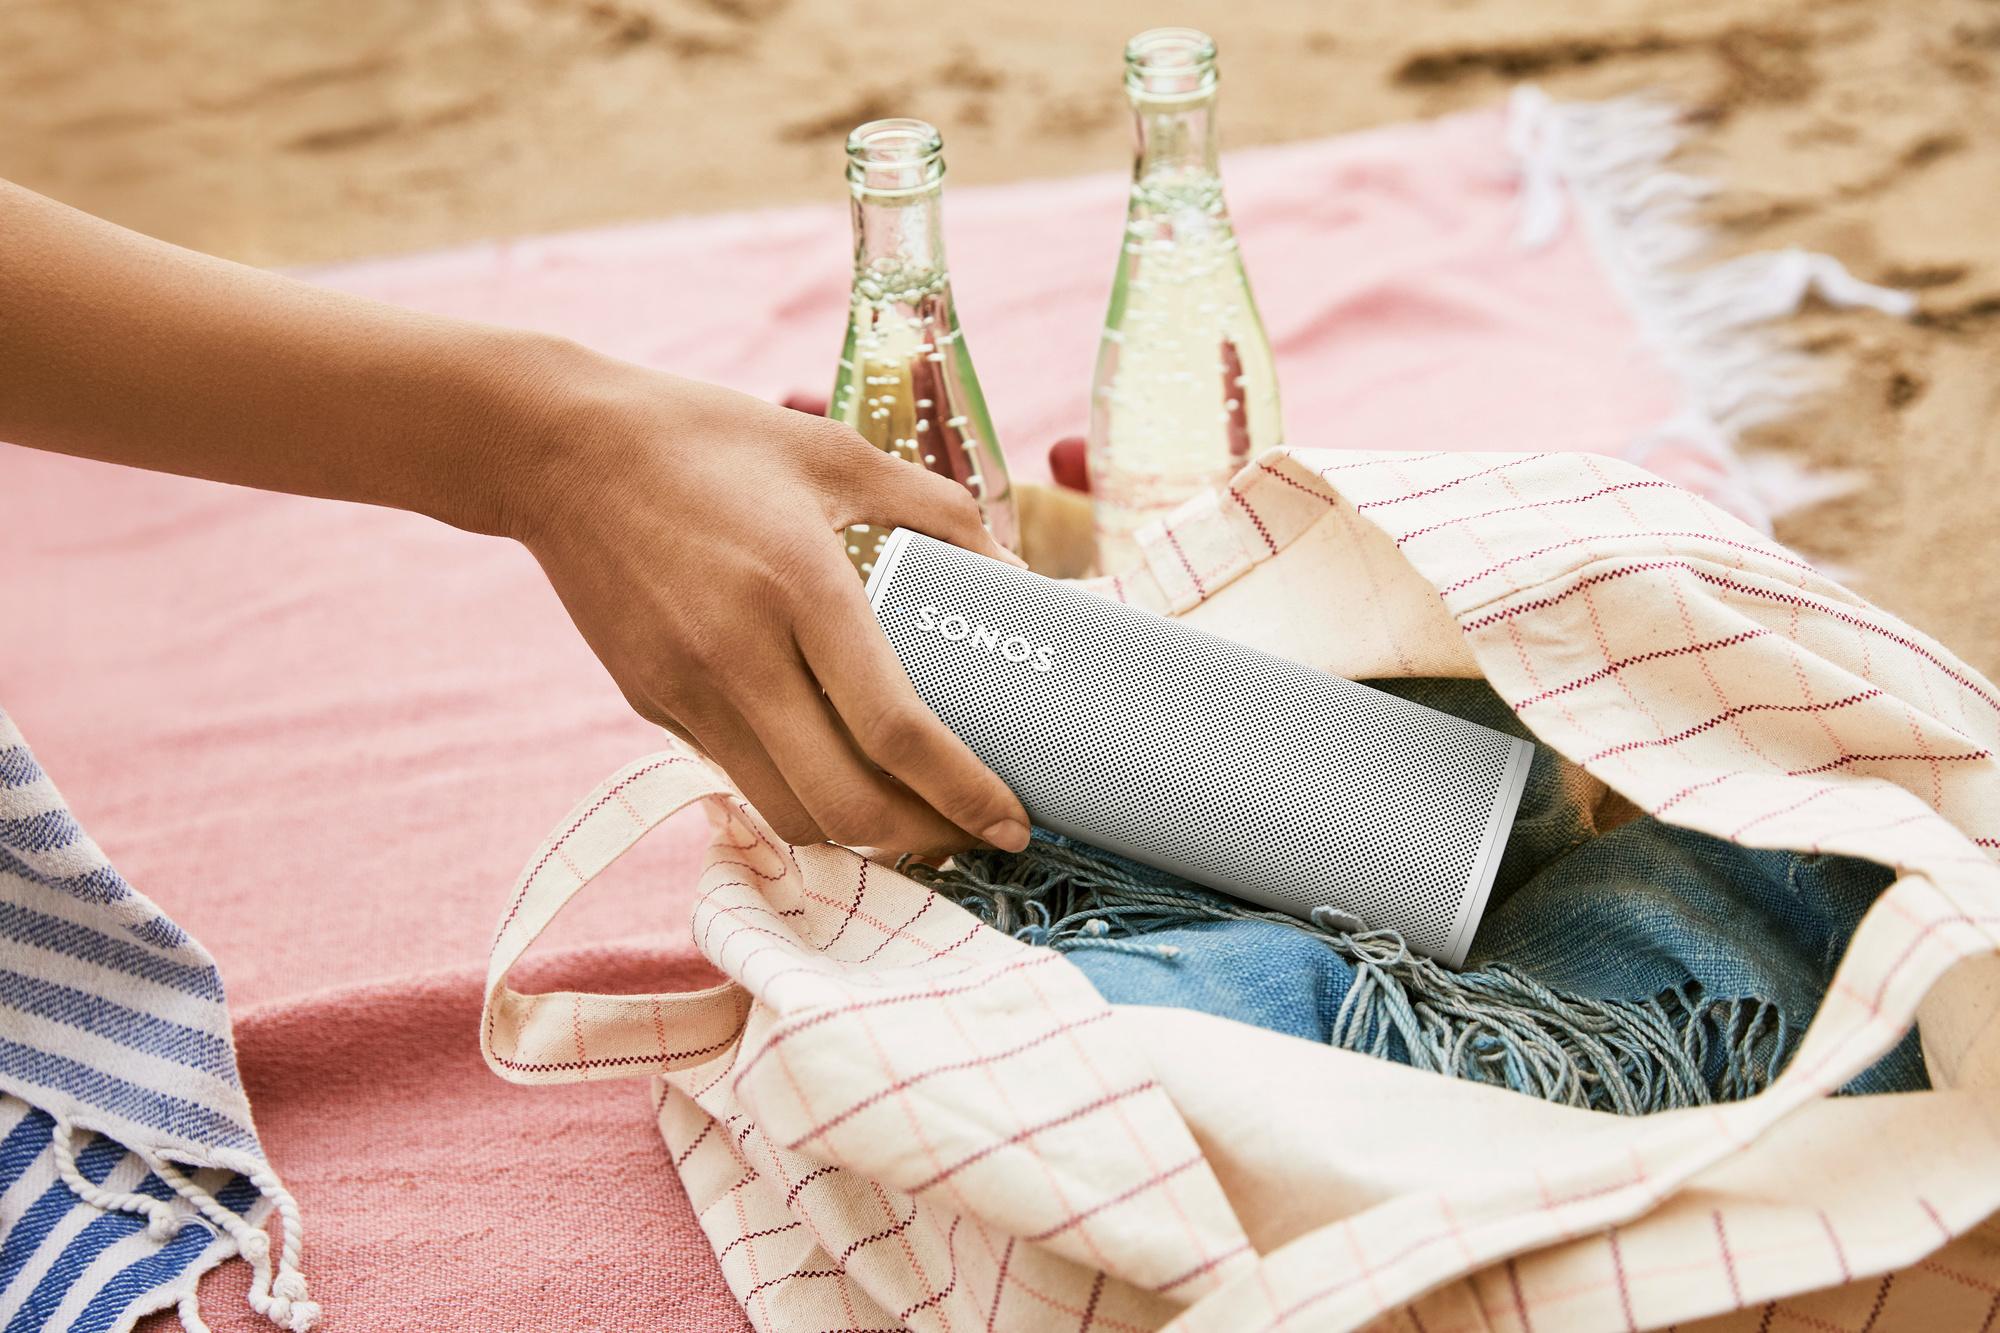 Review: Sonos - Portable speaker die je vooral veel moet opladen - DataNews